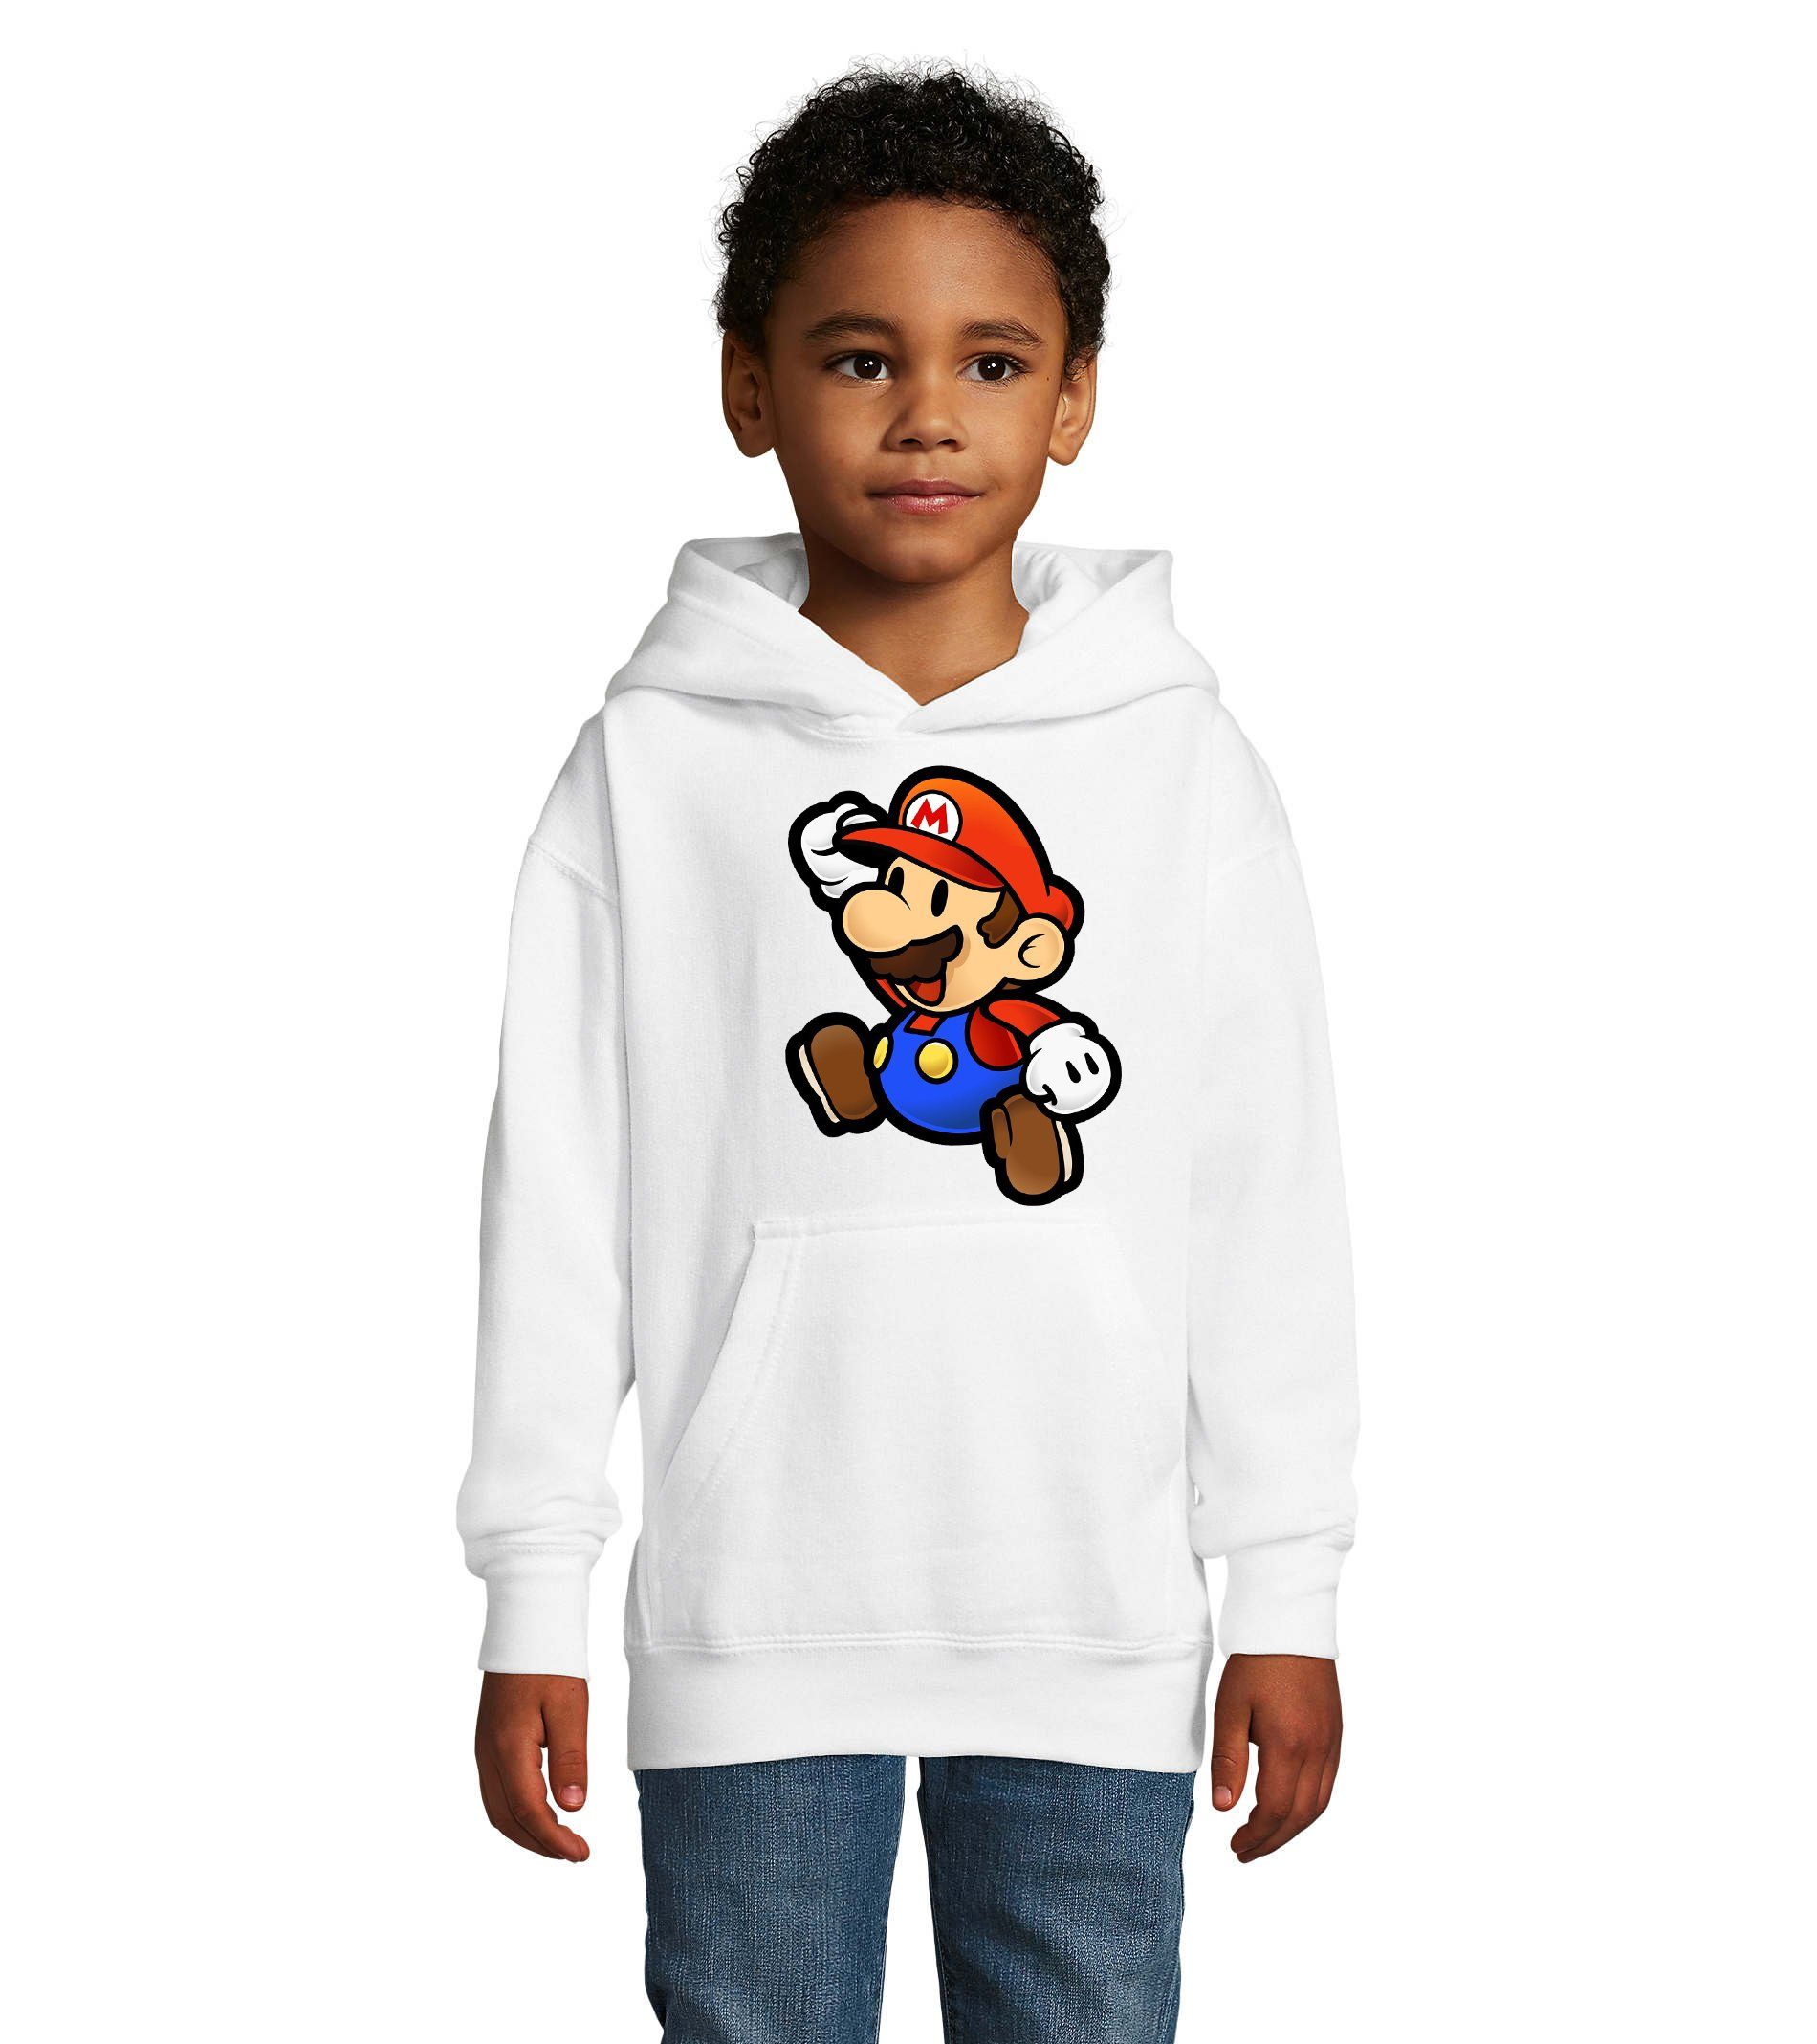 Blondie & Brownie Hoodie Kinder Jungen & Mädchen Mario Nintendo Gaming Luigi Yoshi Super mit Kapuze Weiß